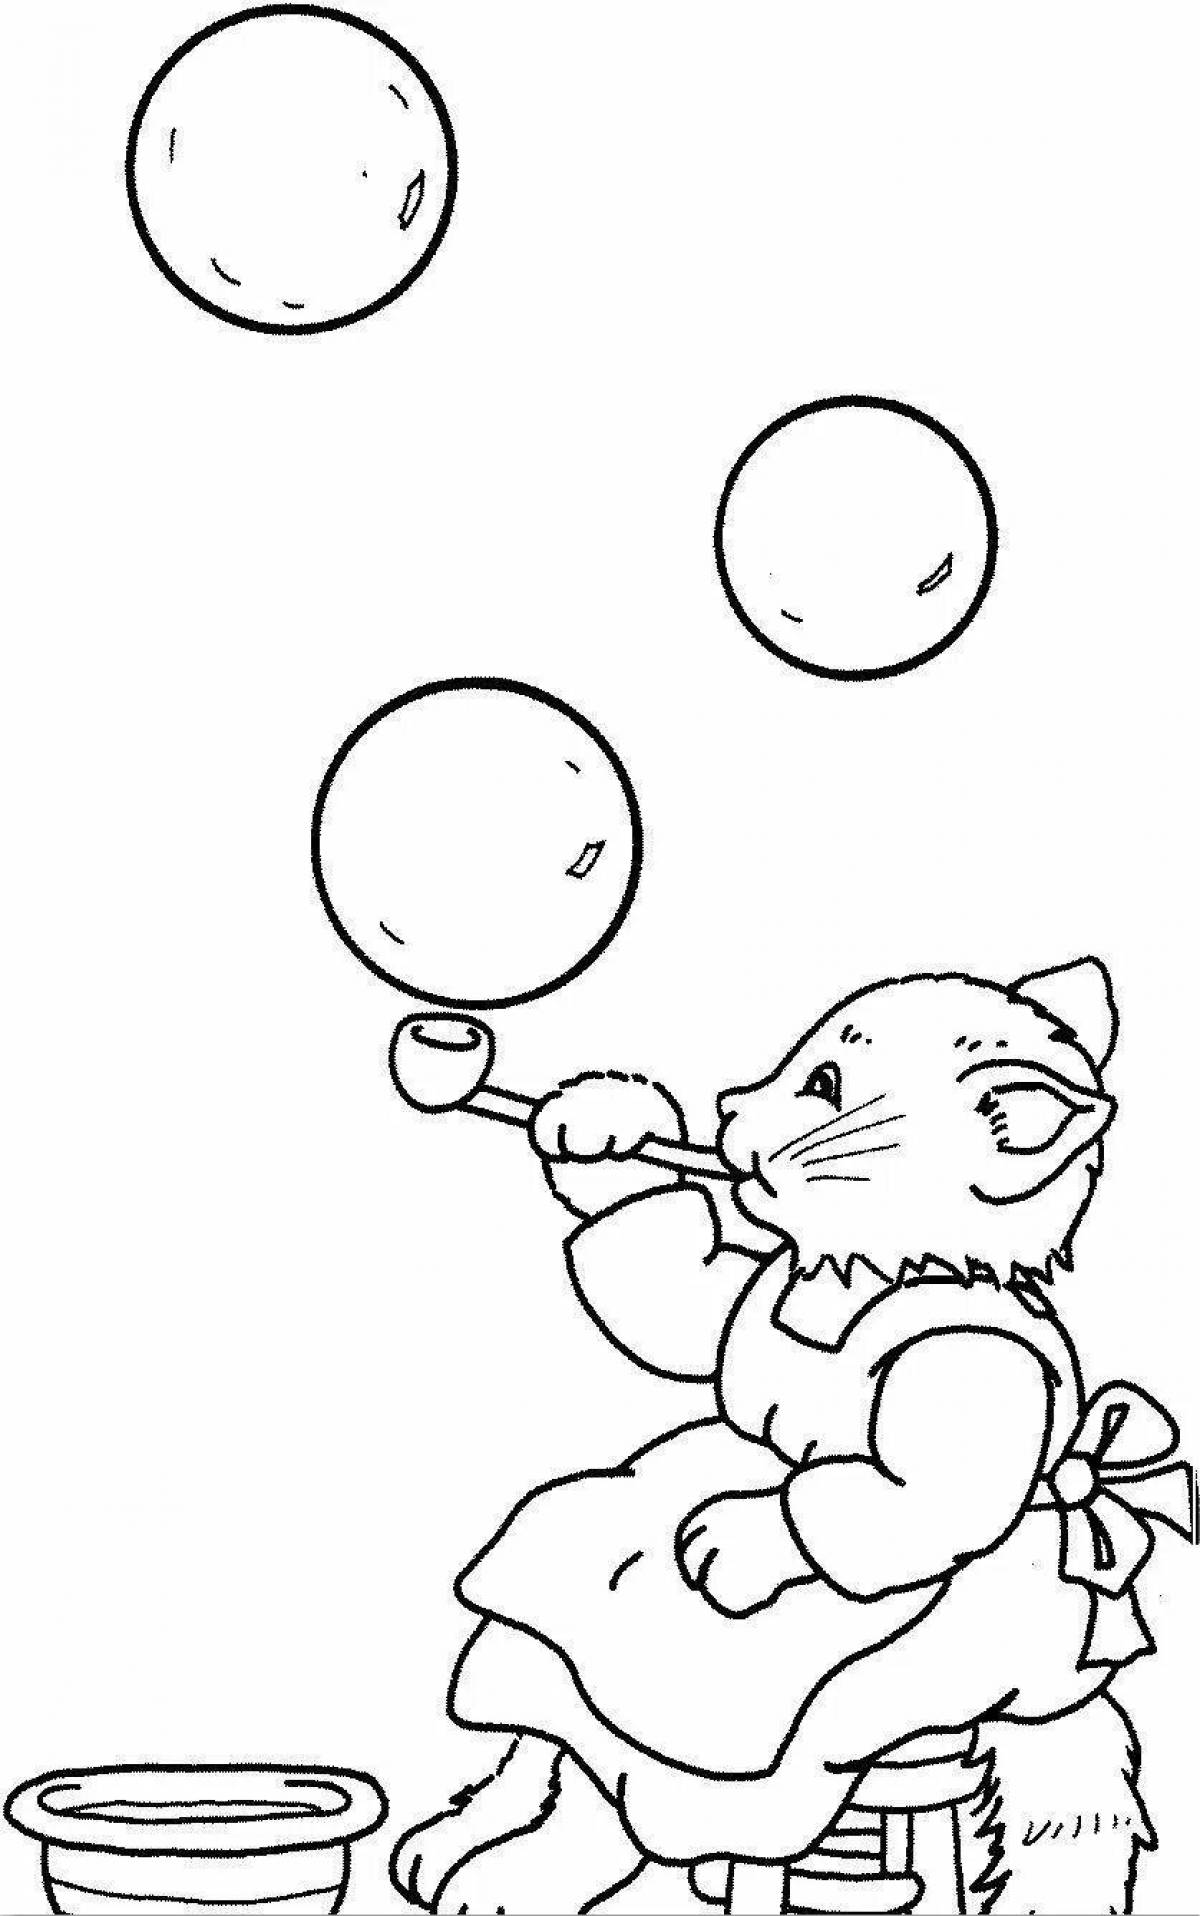 Хихикающая кошка с воздушными шарами